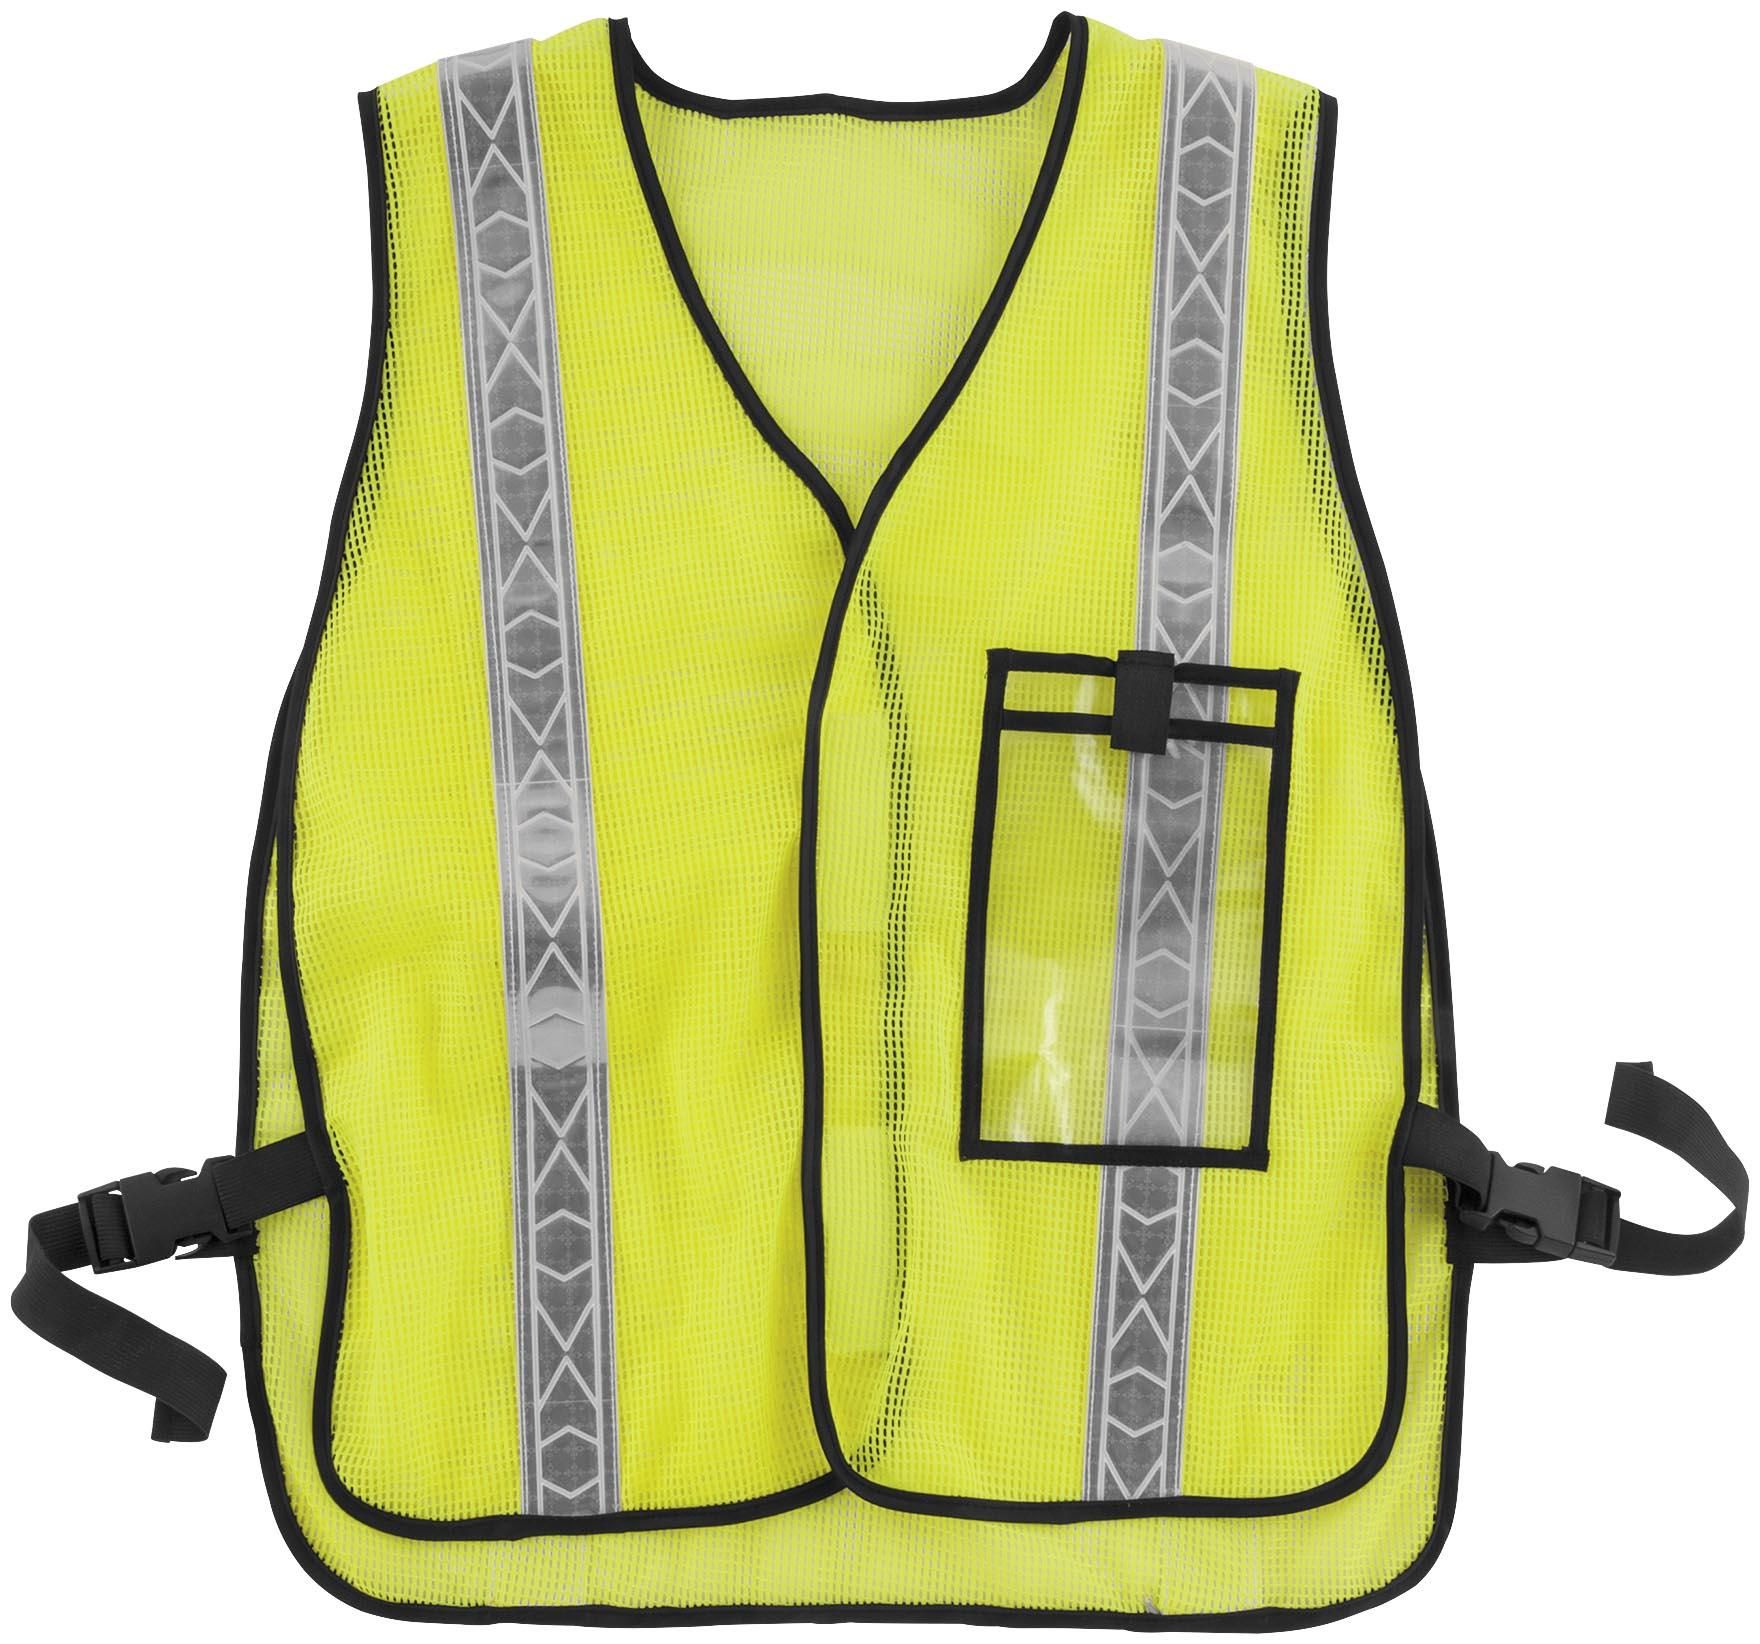 3TBB-BIKEMASTER-543606 Motorcycle Safety Vest